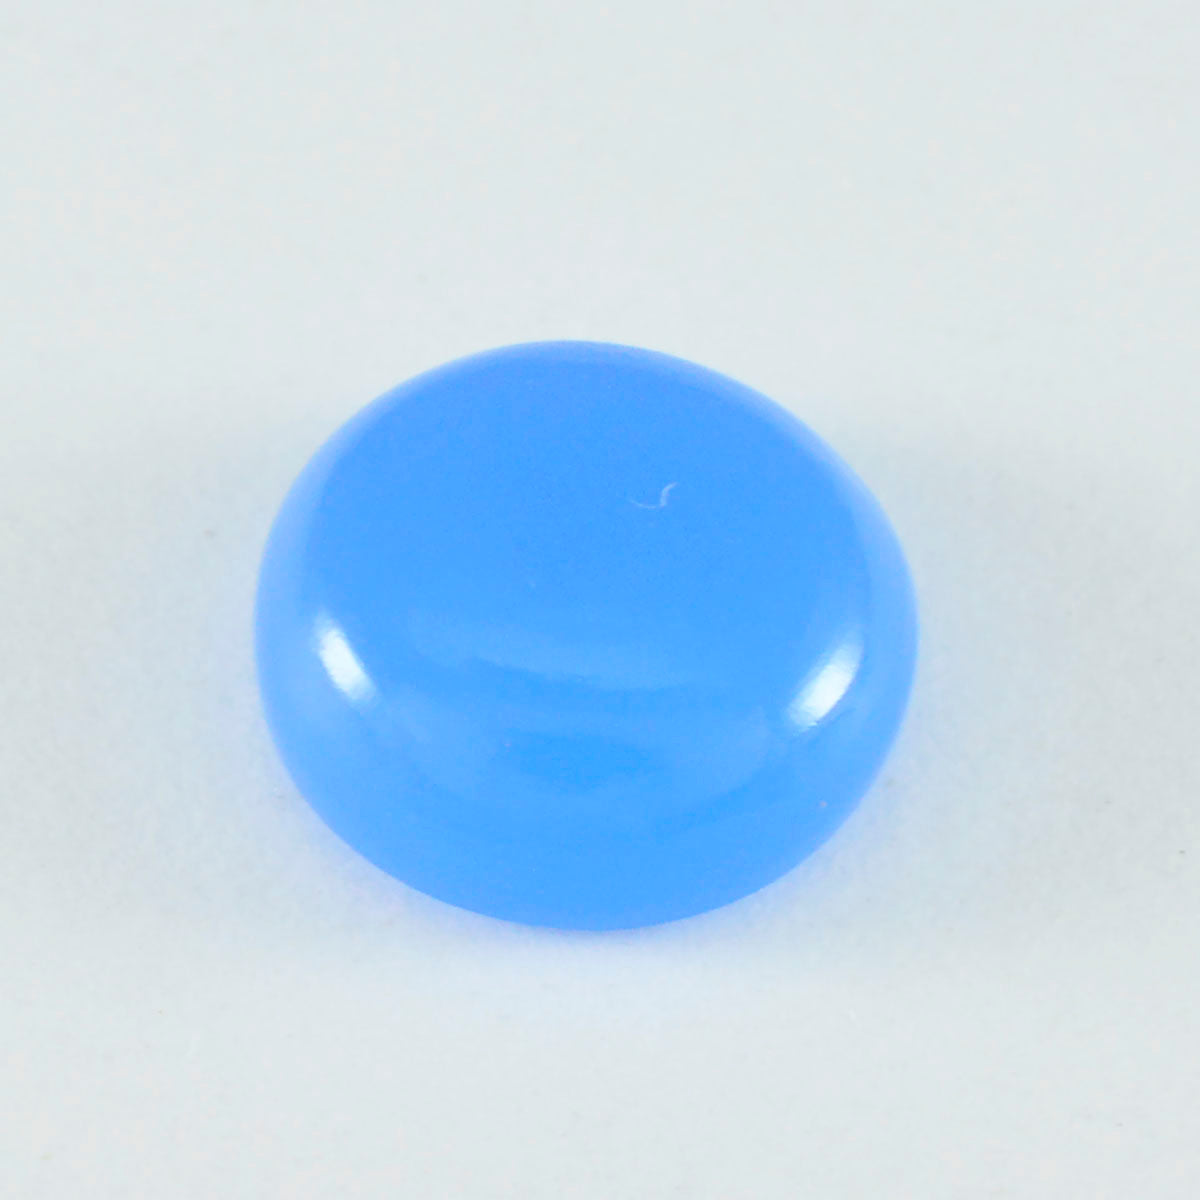 Riyogems 1 Stück blauer Chalcedon-Cabochon, 10 x 10 mm, runde Form, hübsche, hochwertige lose Edelsteine